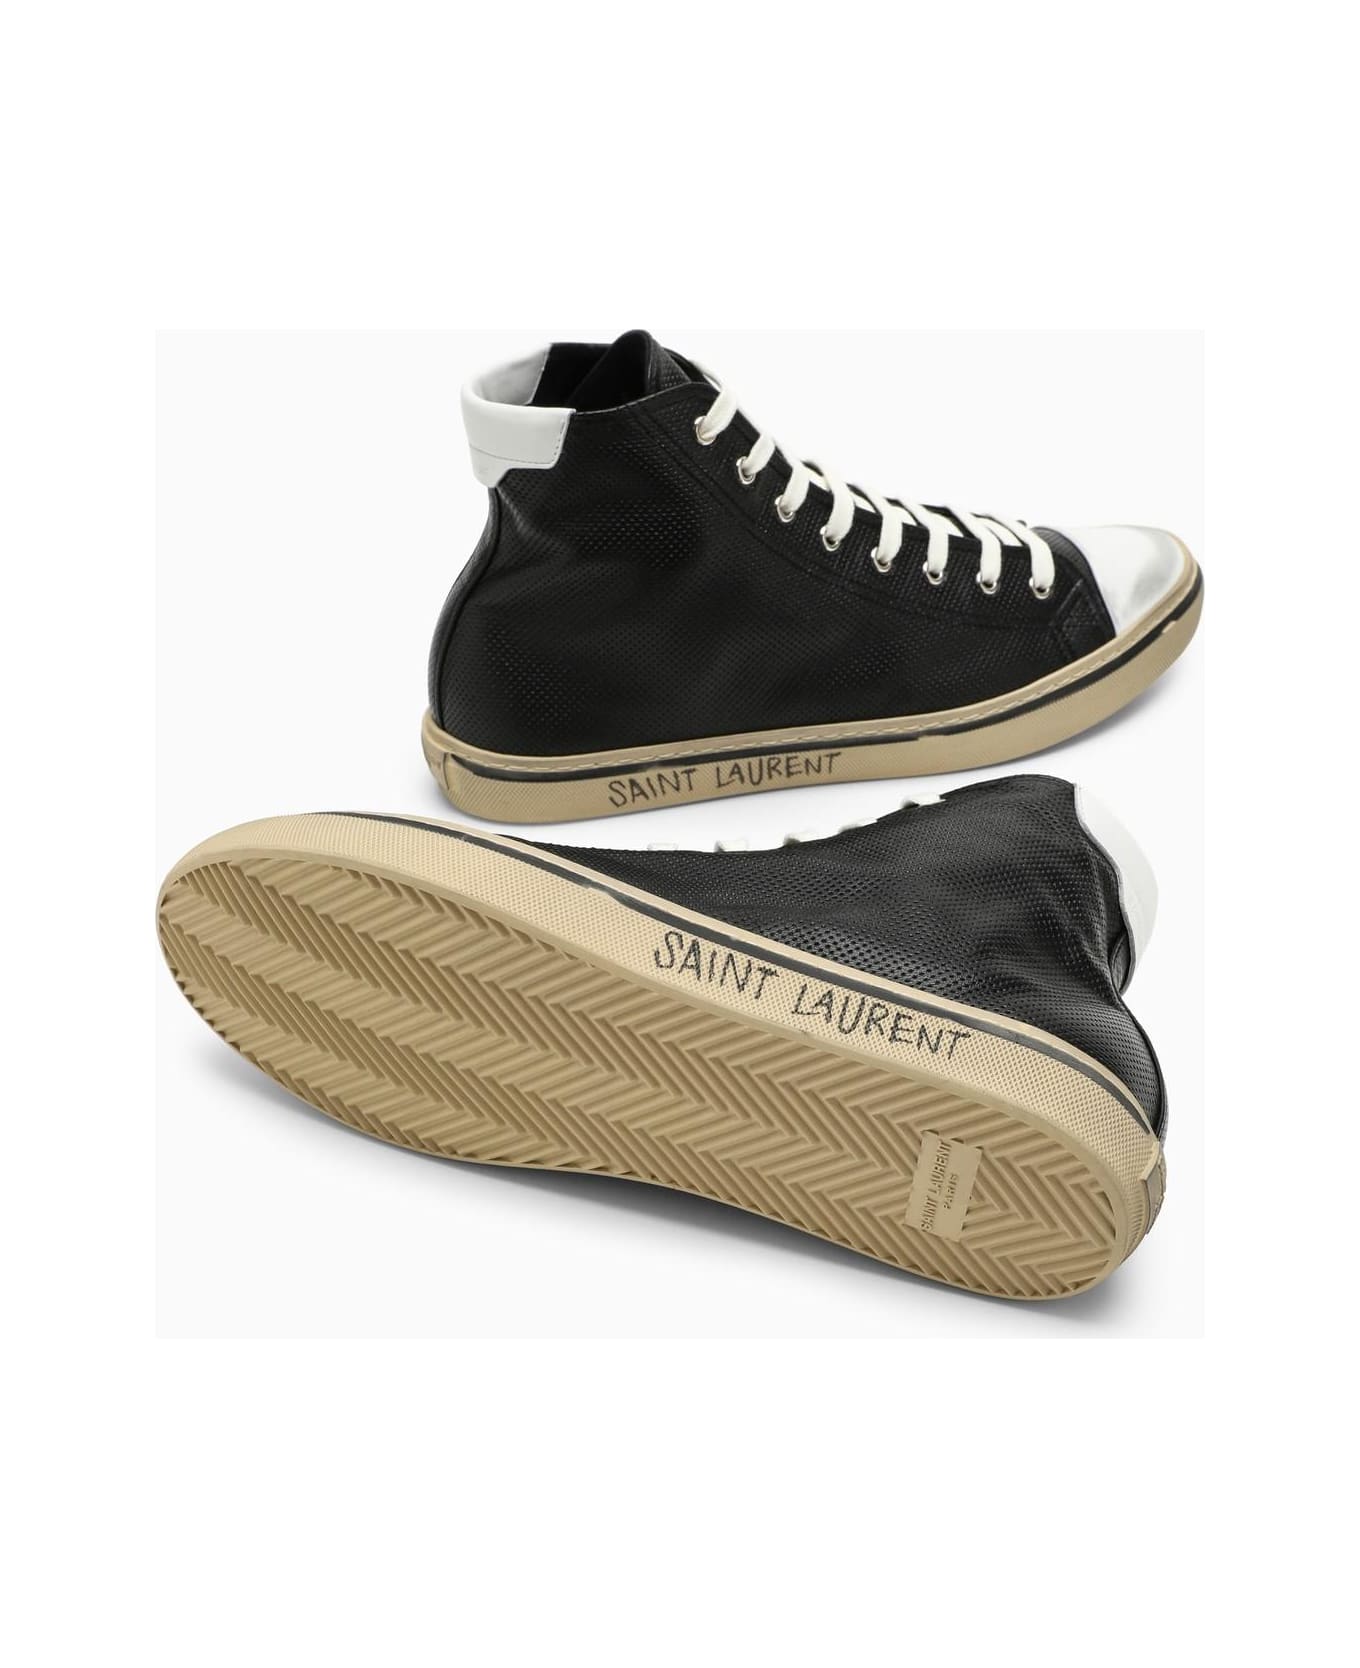 Saint Laurent Malibu Sneakers - Black